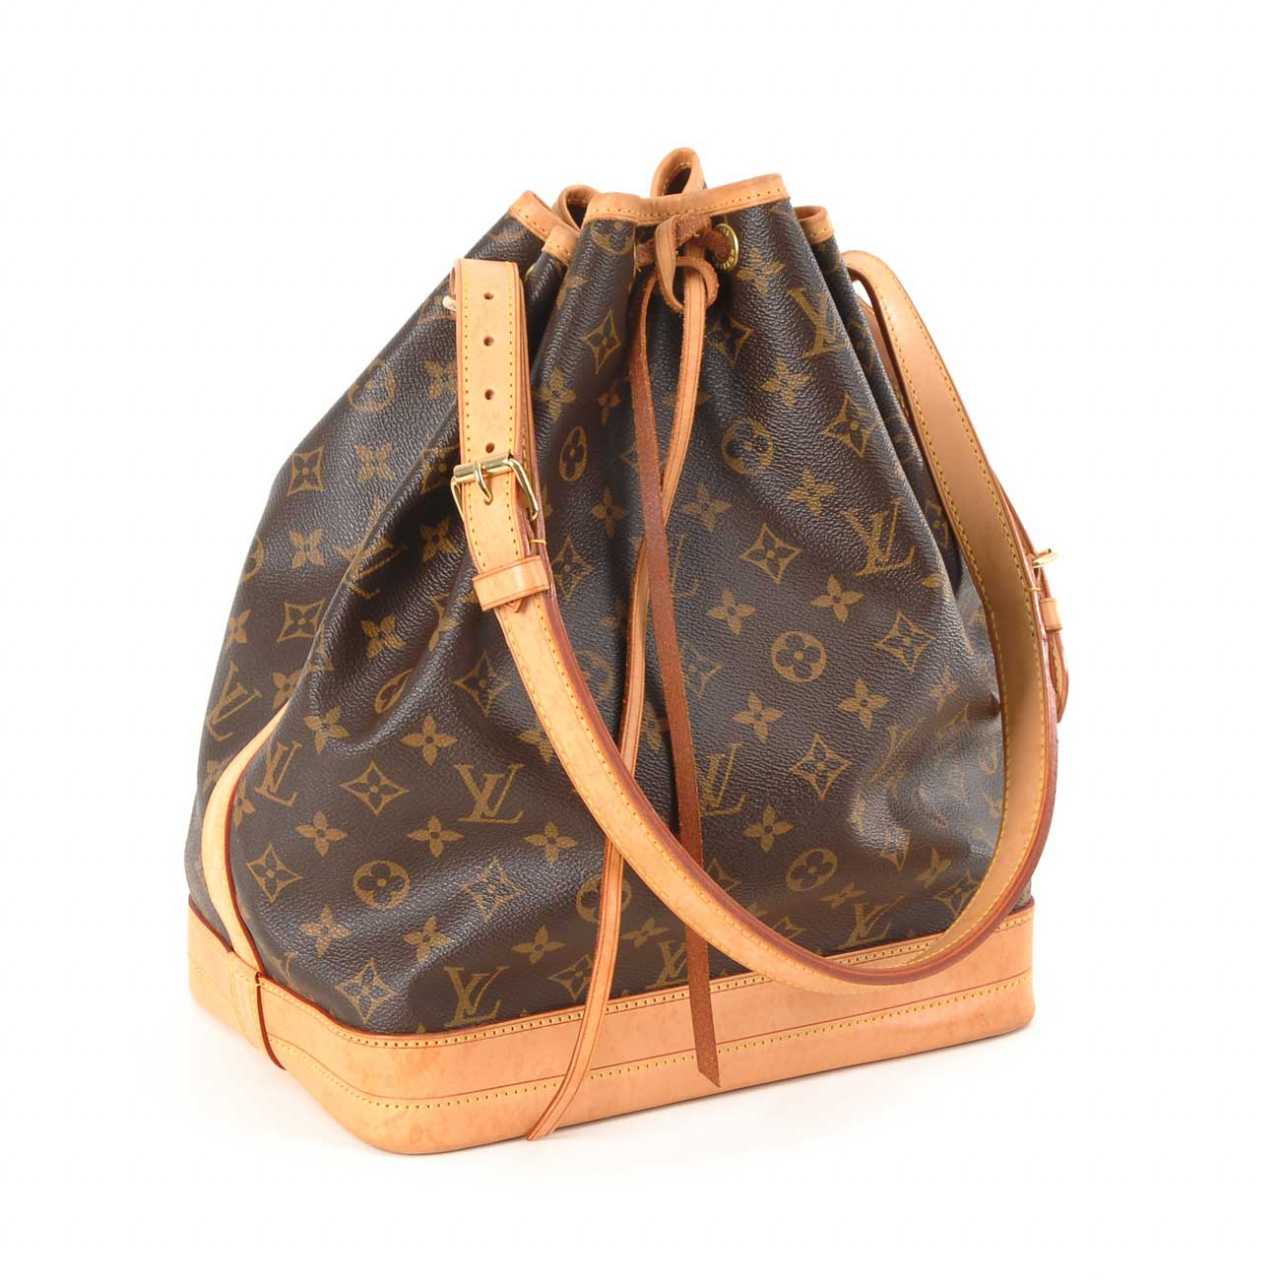 Auktion: Louis Vuitton: Tasche Noah Groß. — online kaufen bei www.speedy25.com ...